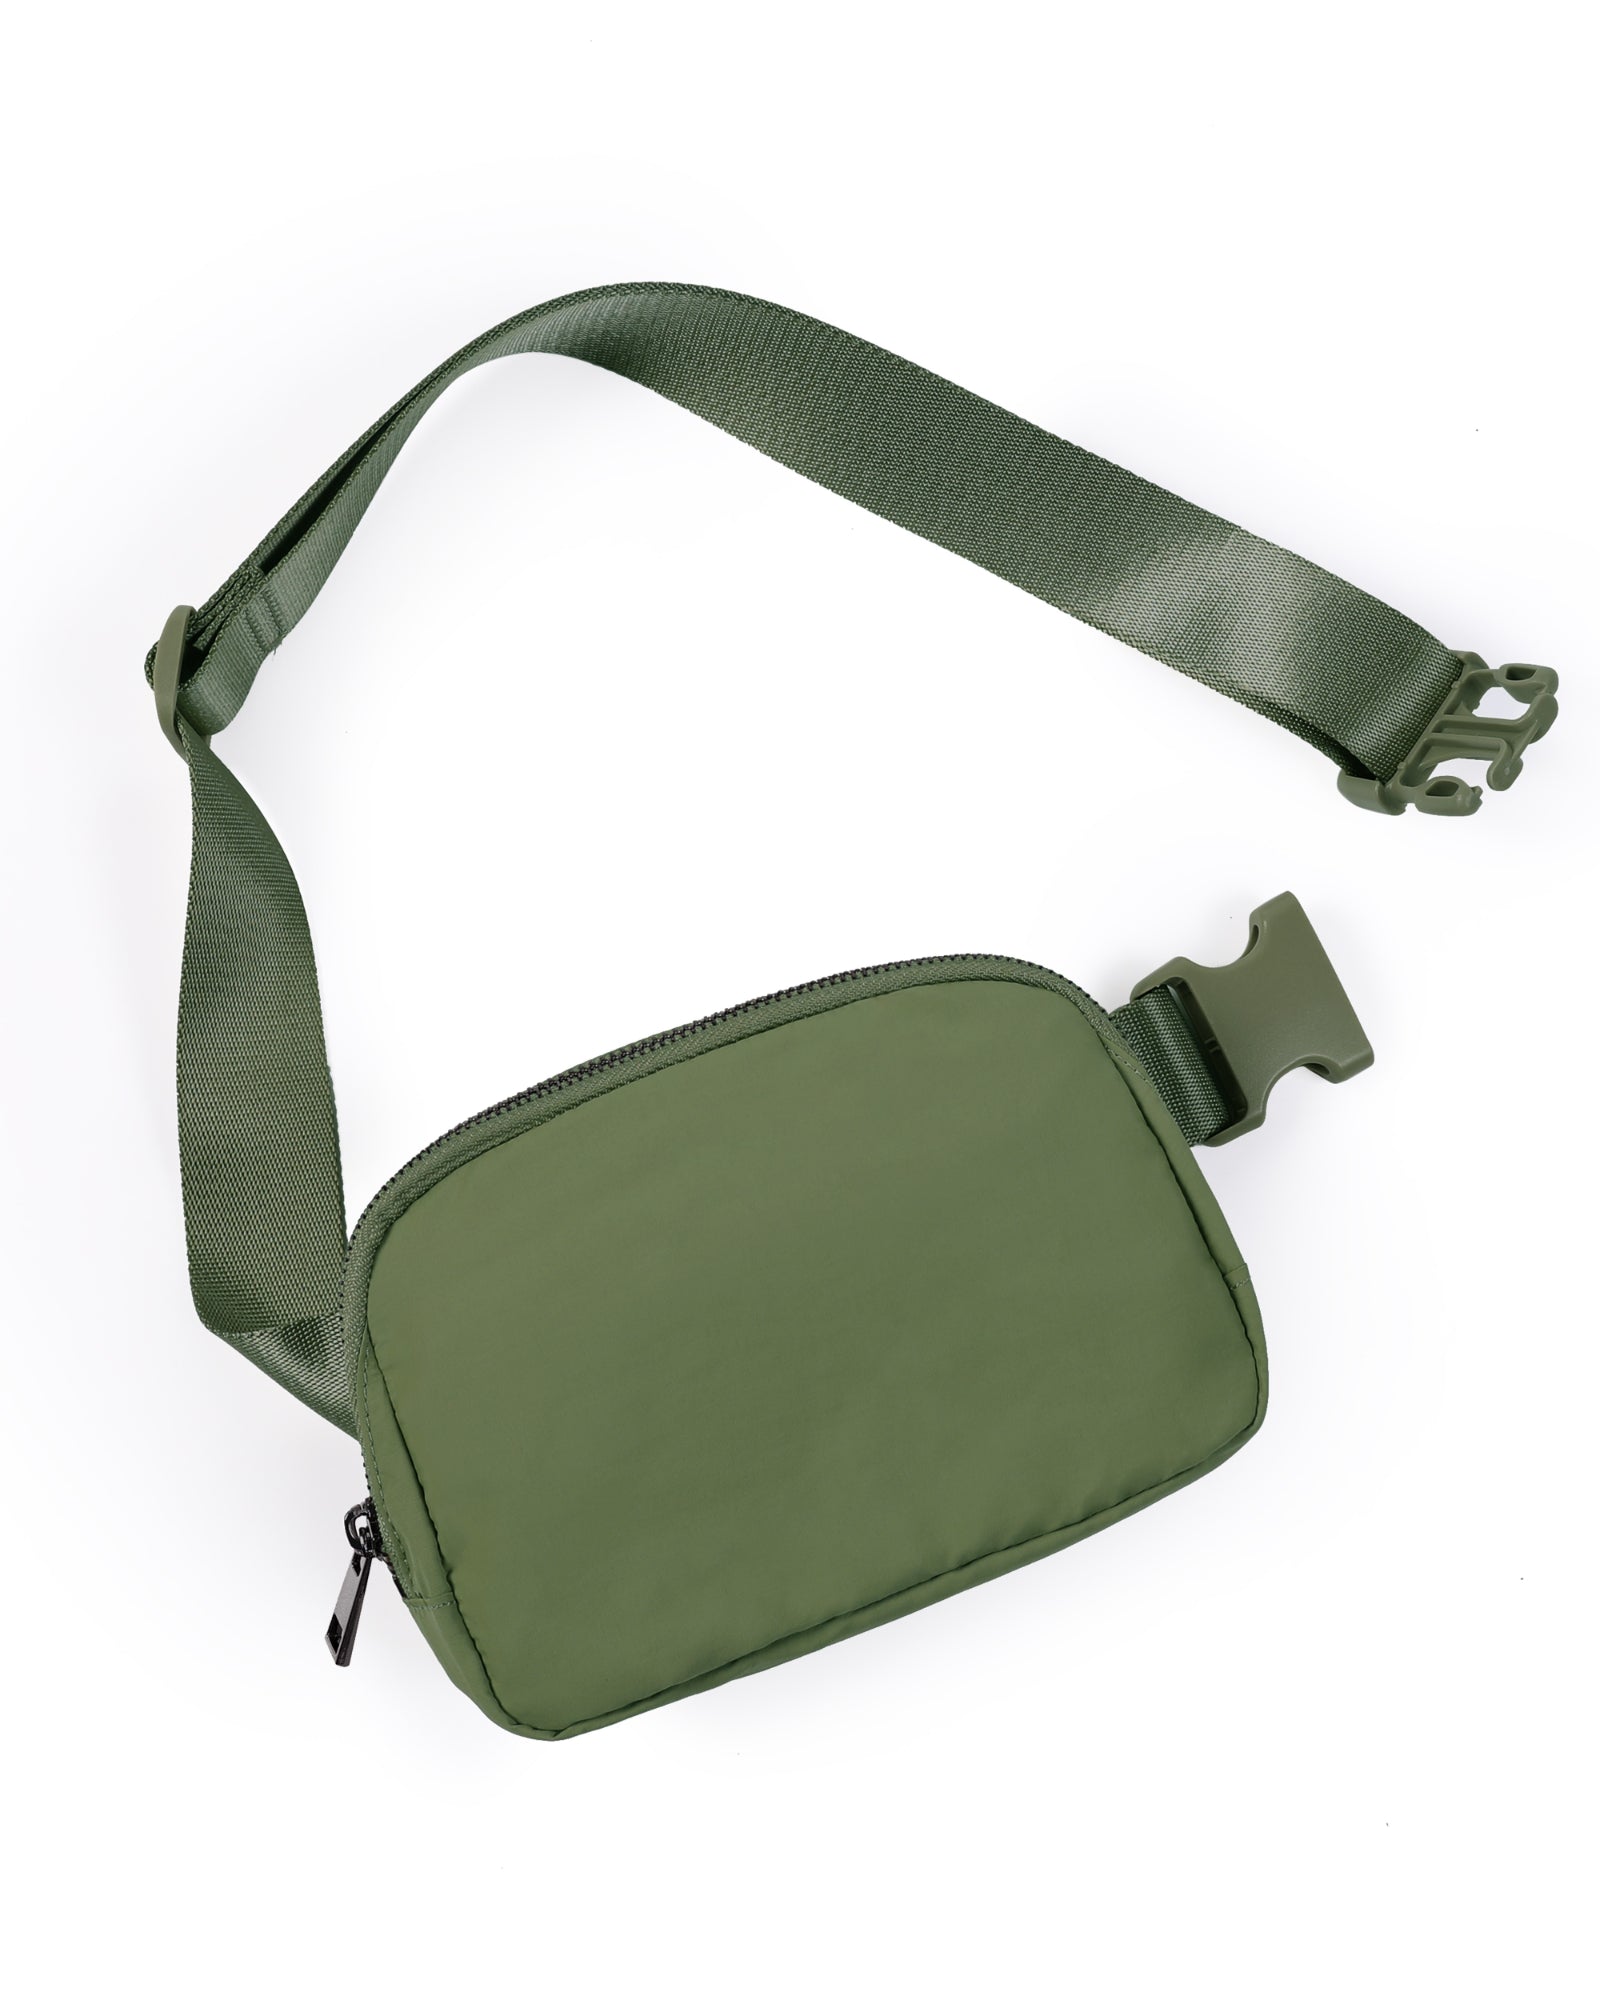 Unisex Mini Belt Bag Deep Khaki 8" x 2" x 5.5" - ododos